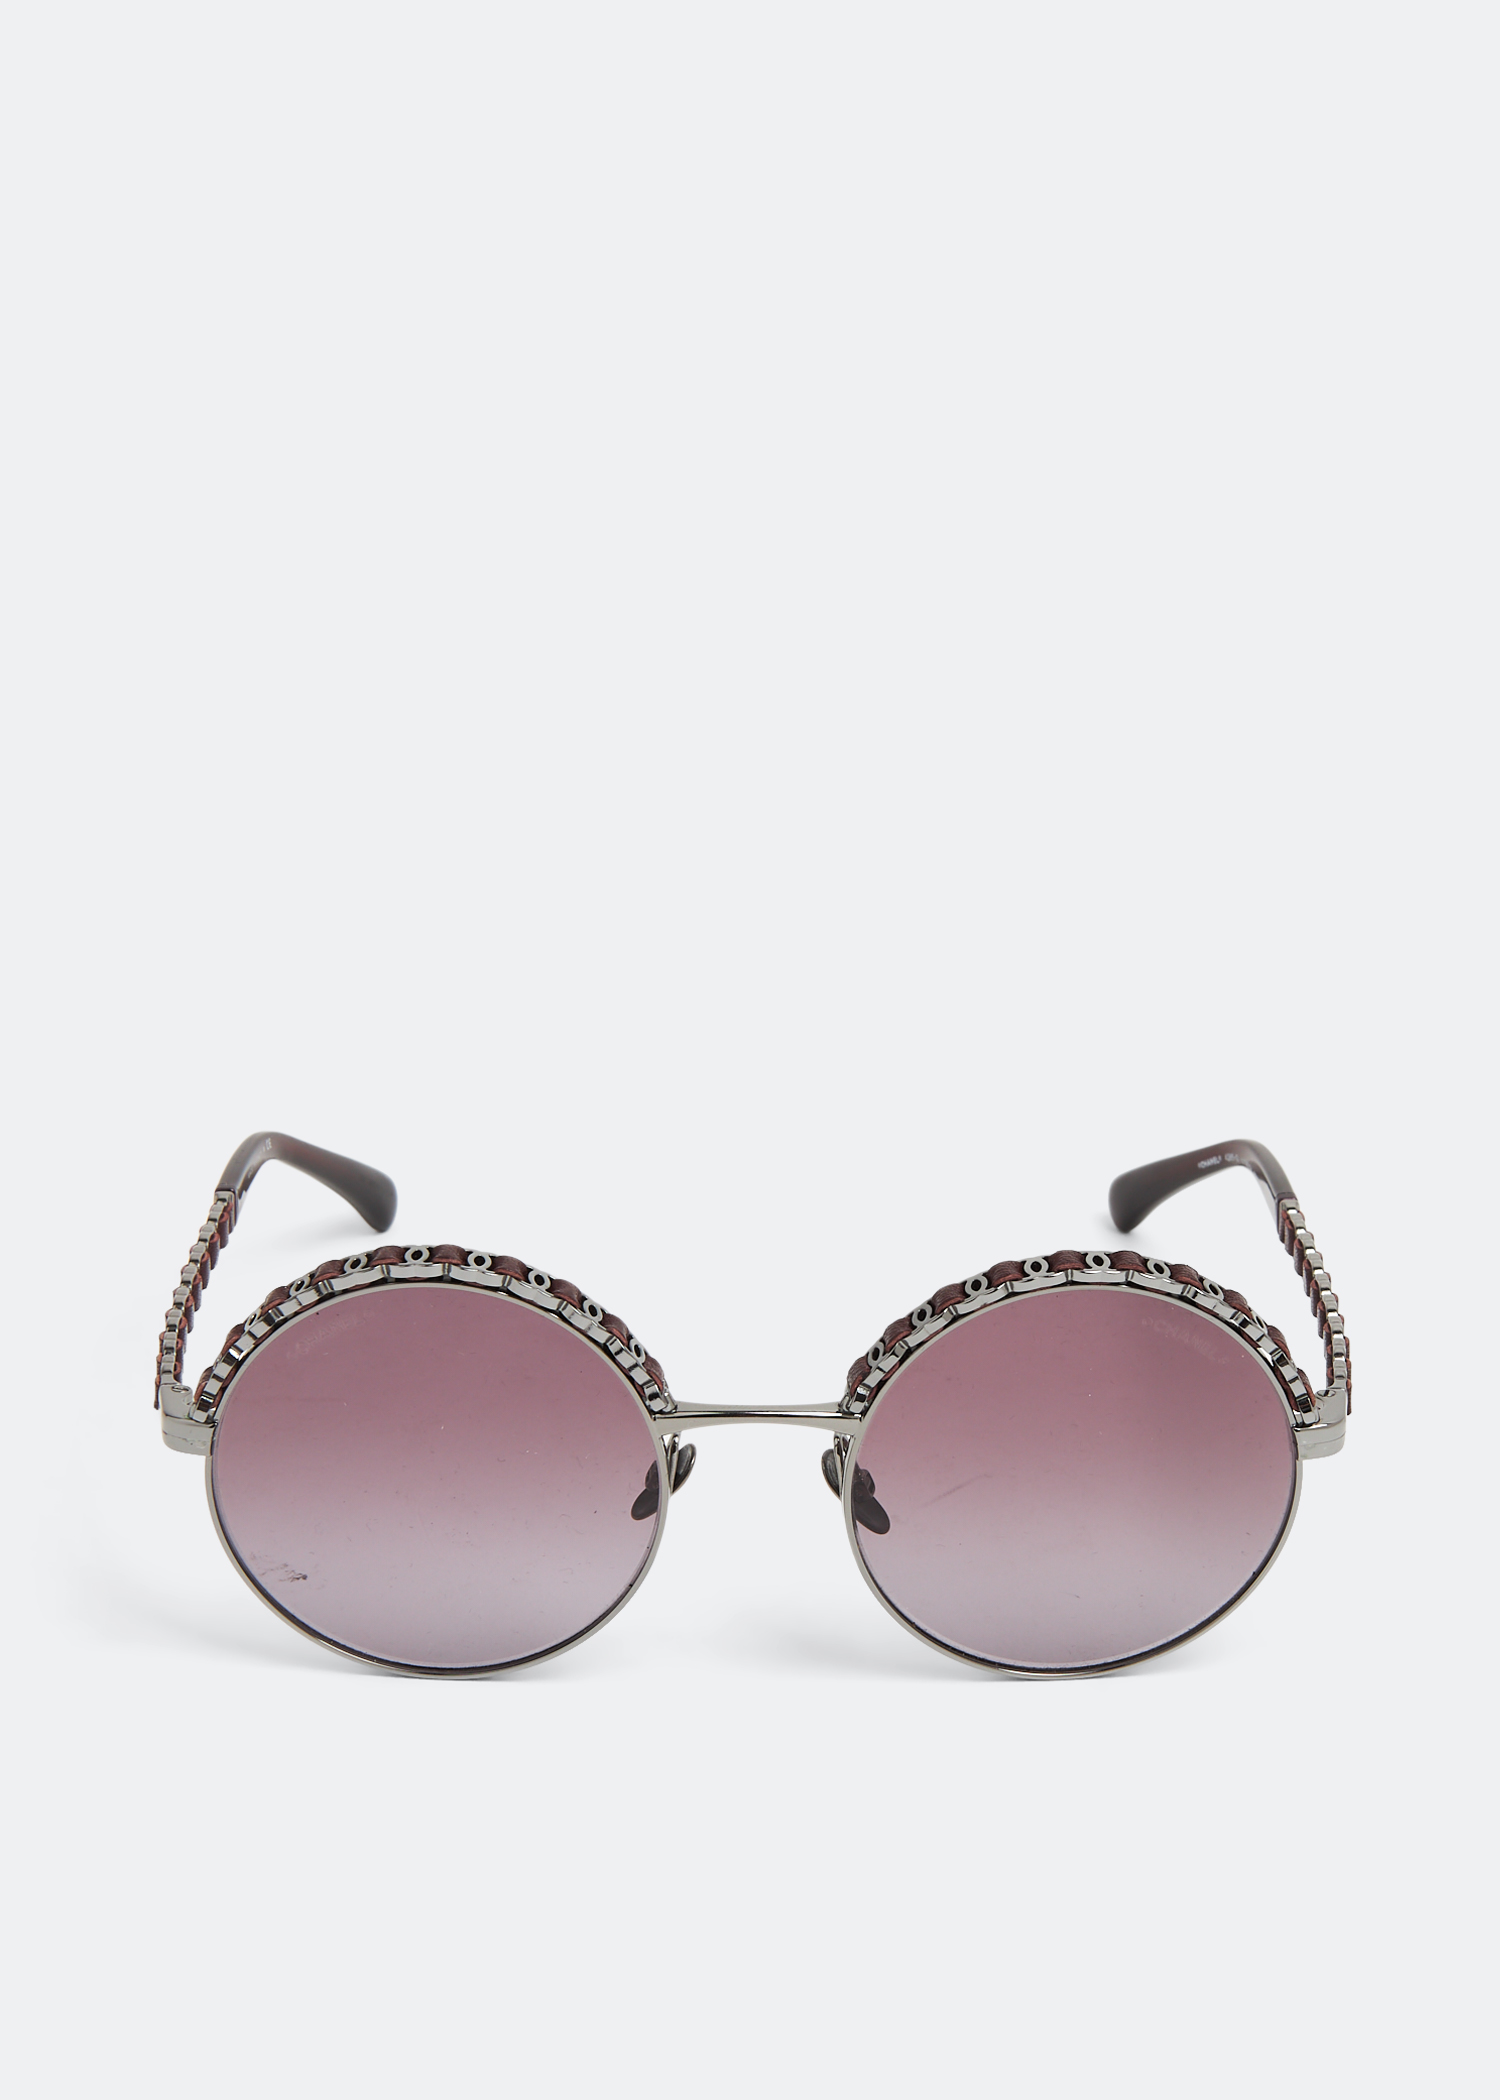 Pin by Mariono Boutique on MARIONO ACCESSORIES  Fashion eye glasses,  Glasses fashion, Retro sunglasses